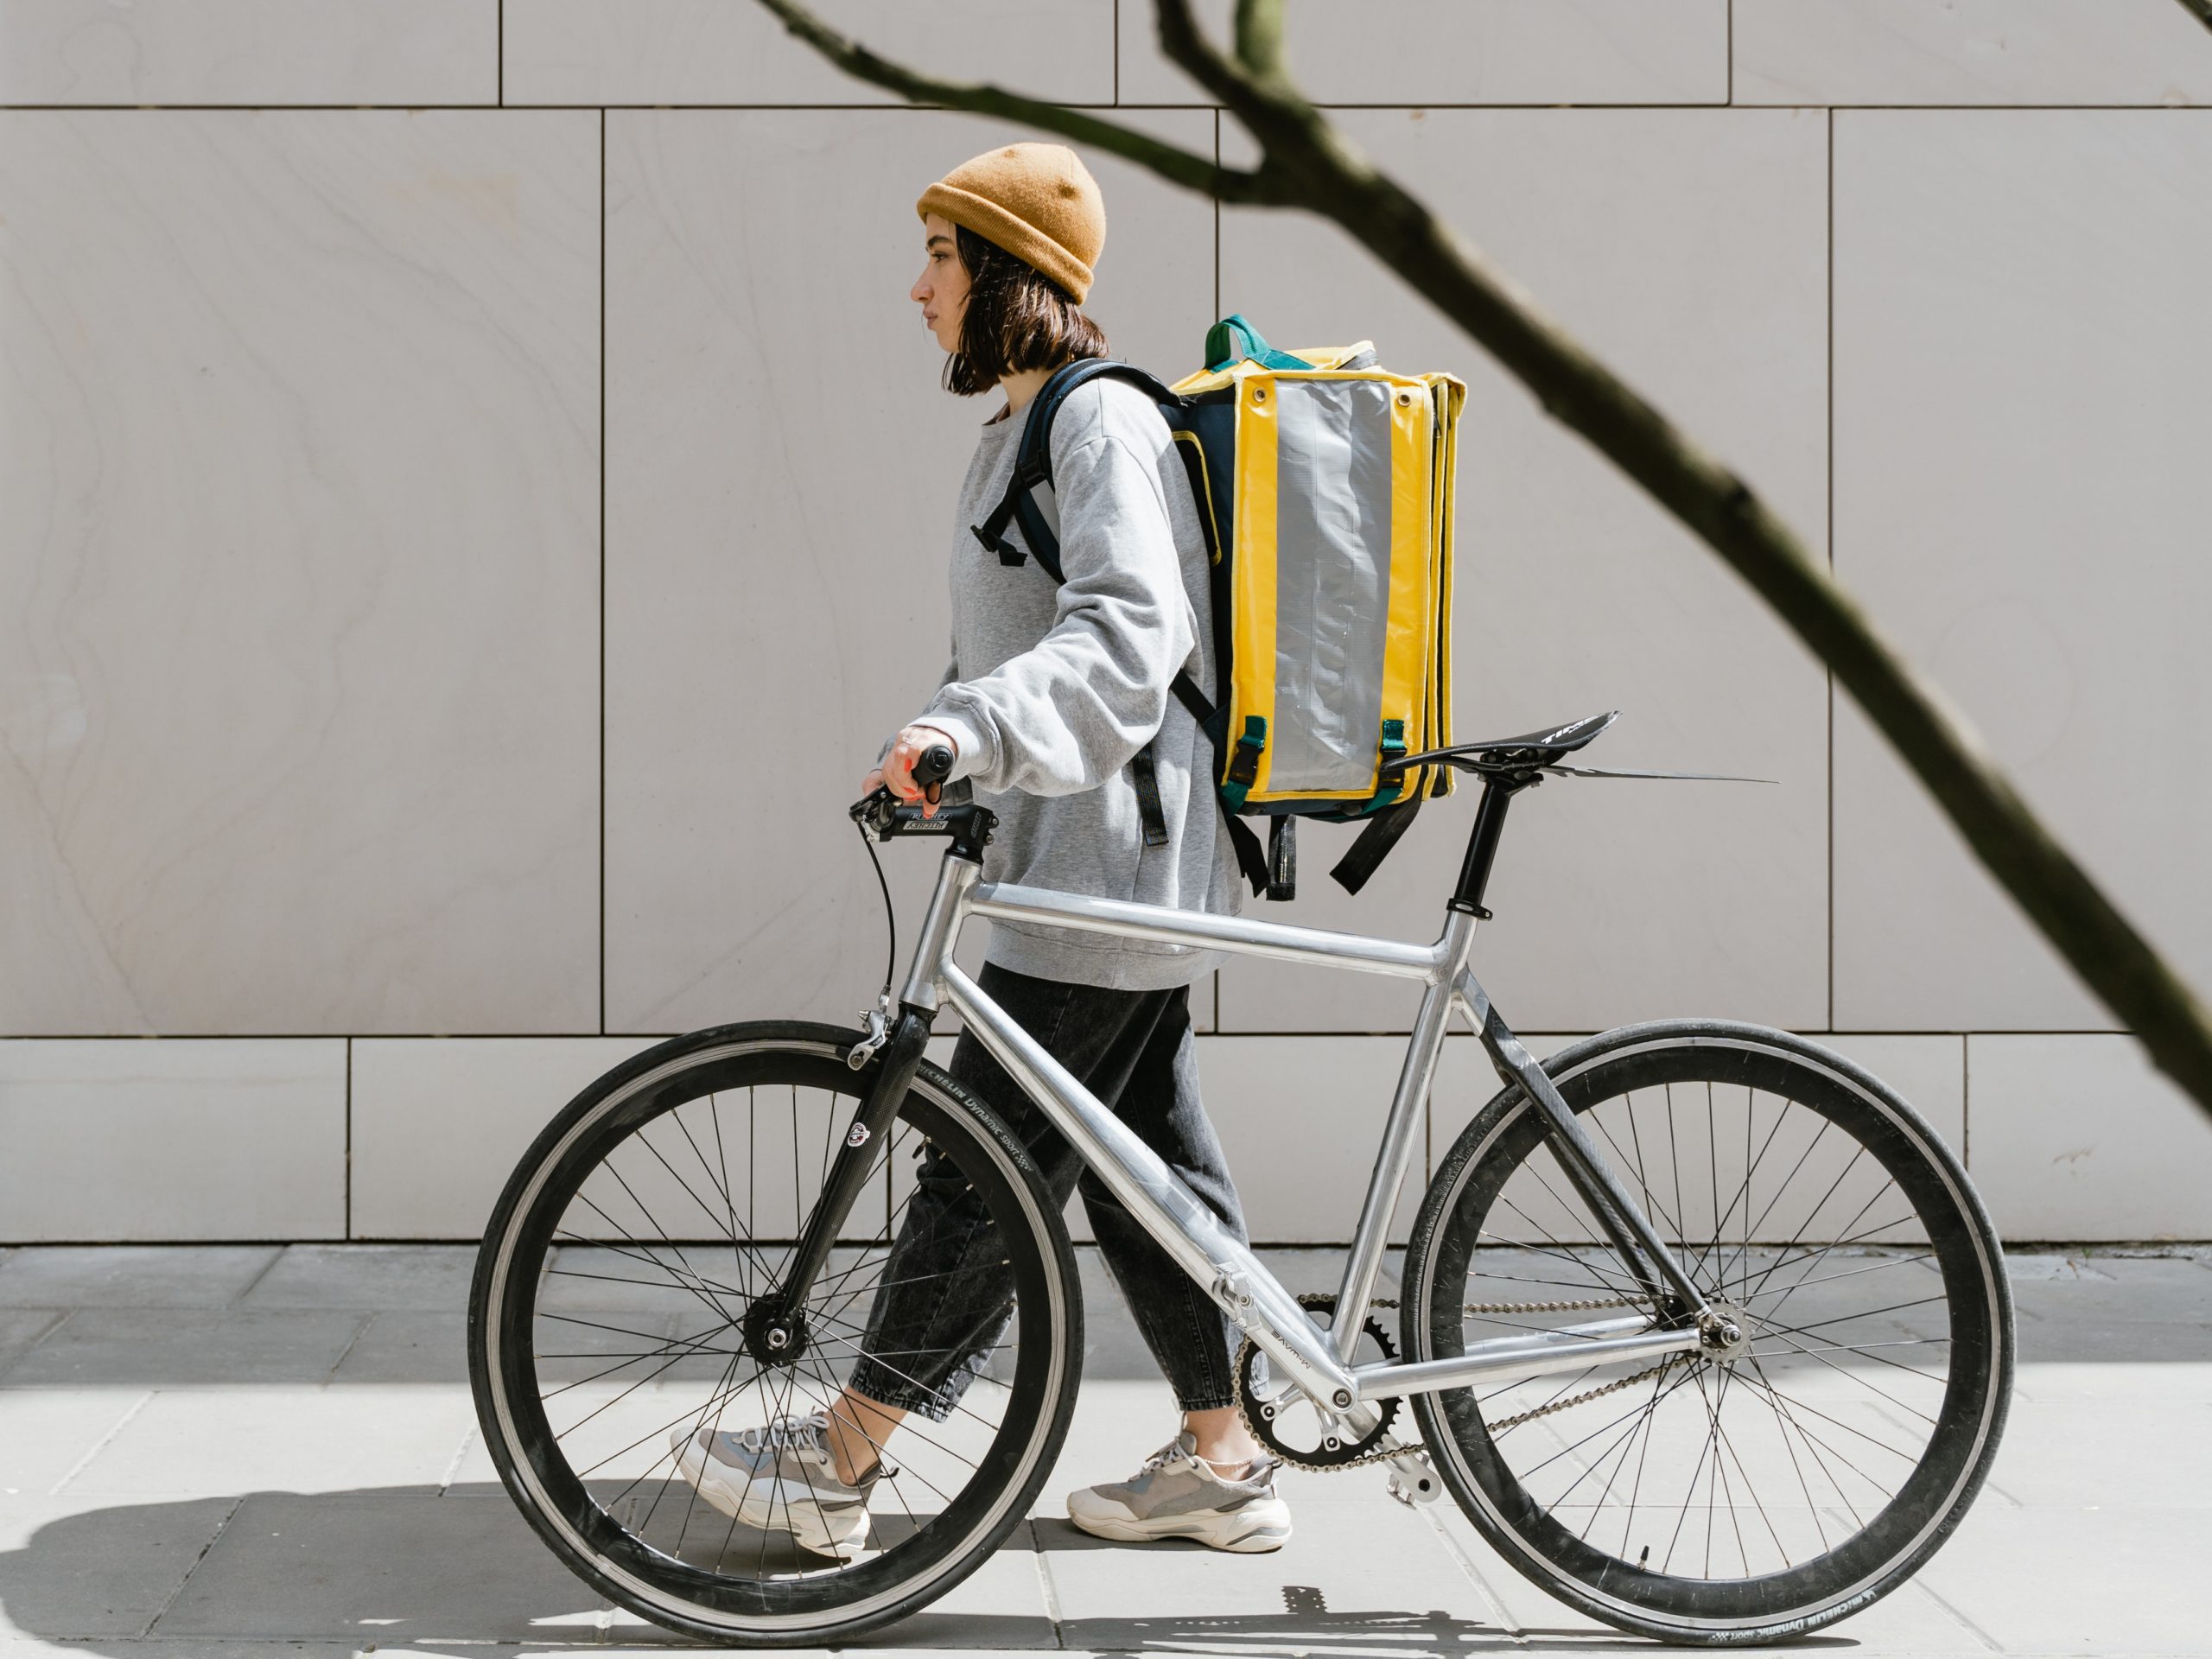 Pessoa andando enquanto leva uma bicicleta e carrega uma mochila amarela de entrega nas costas.